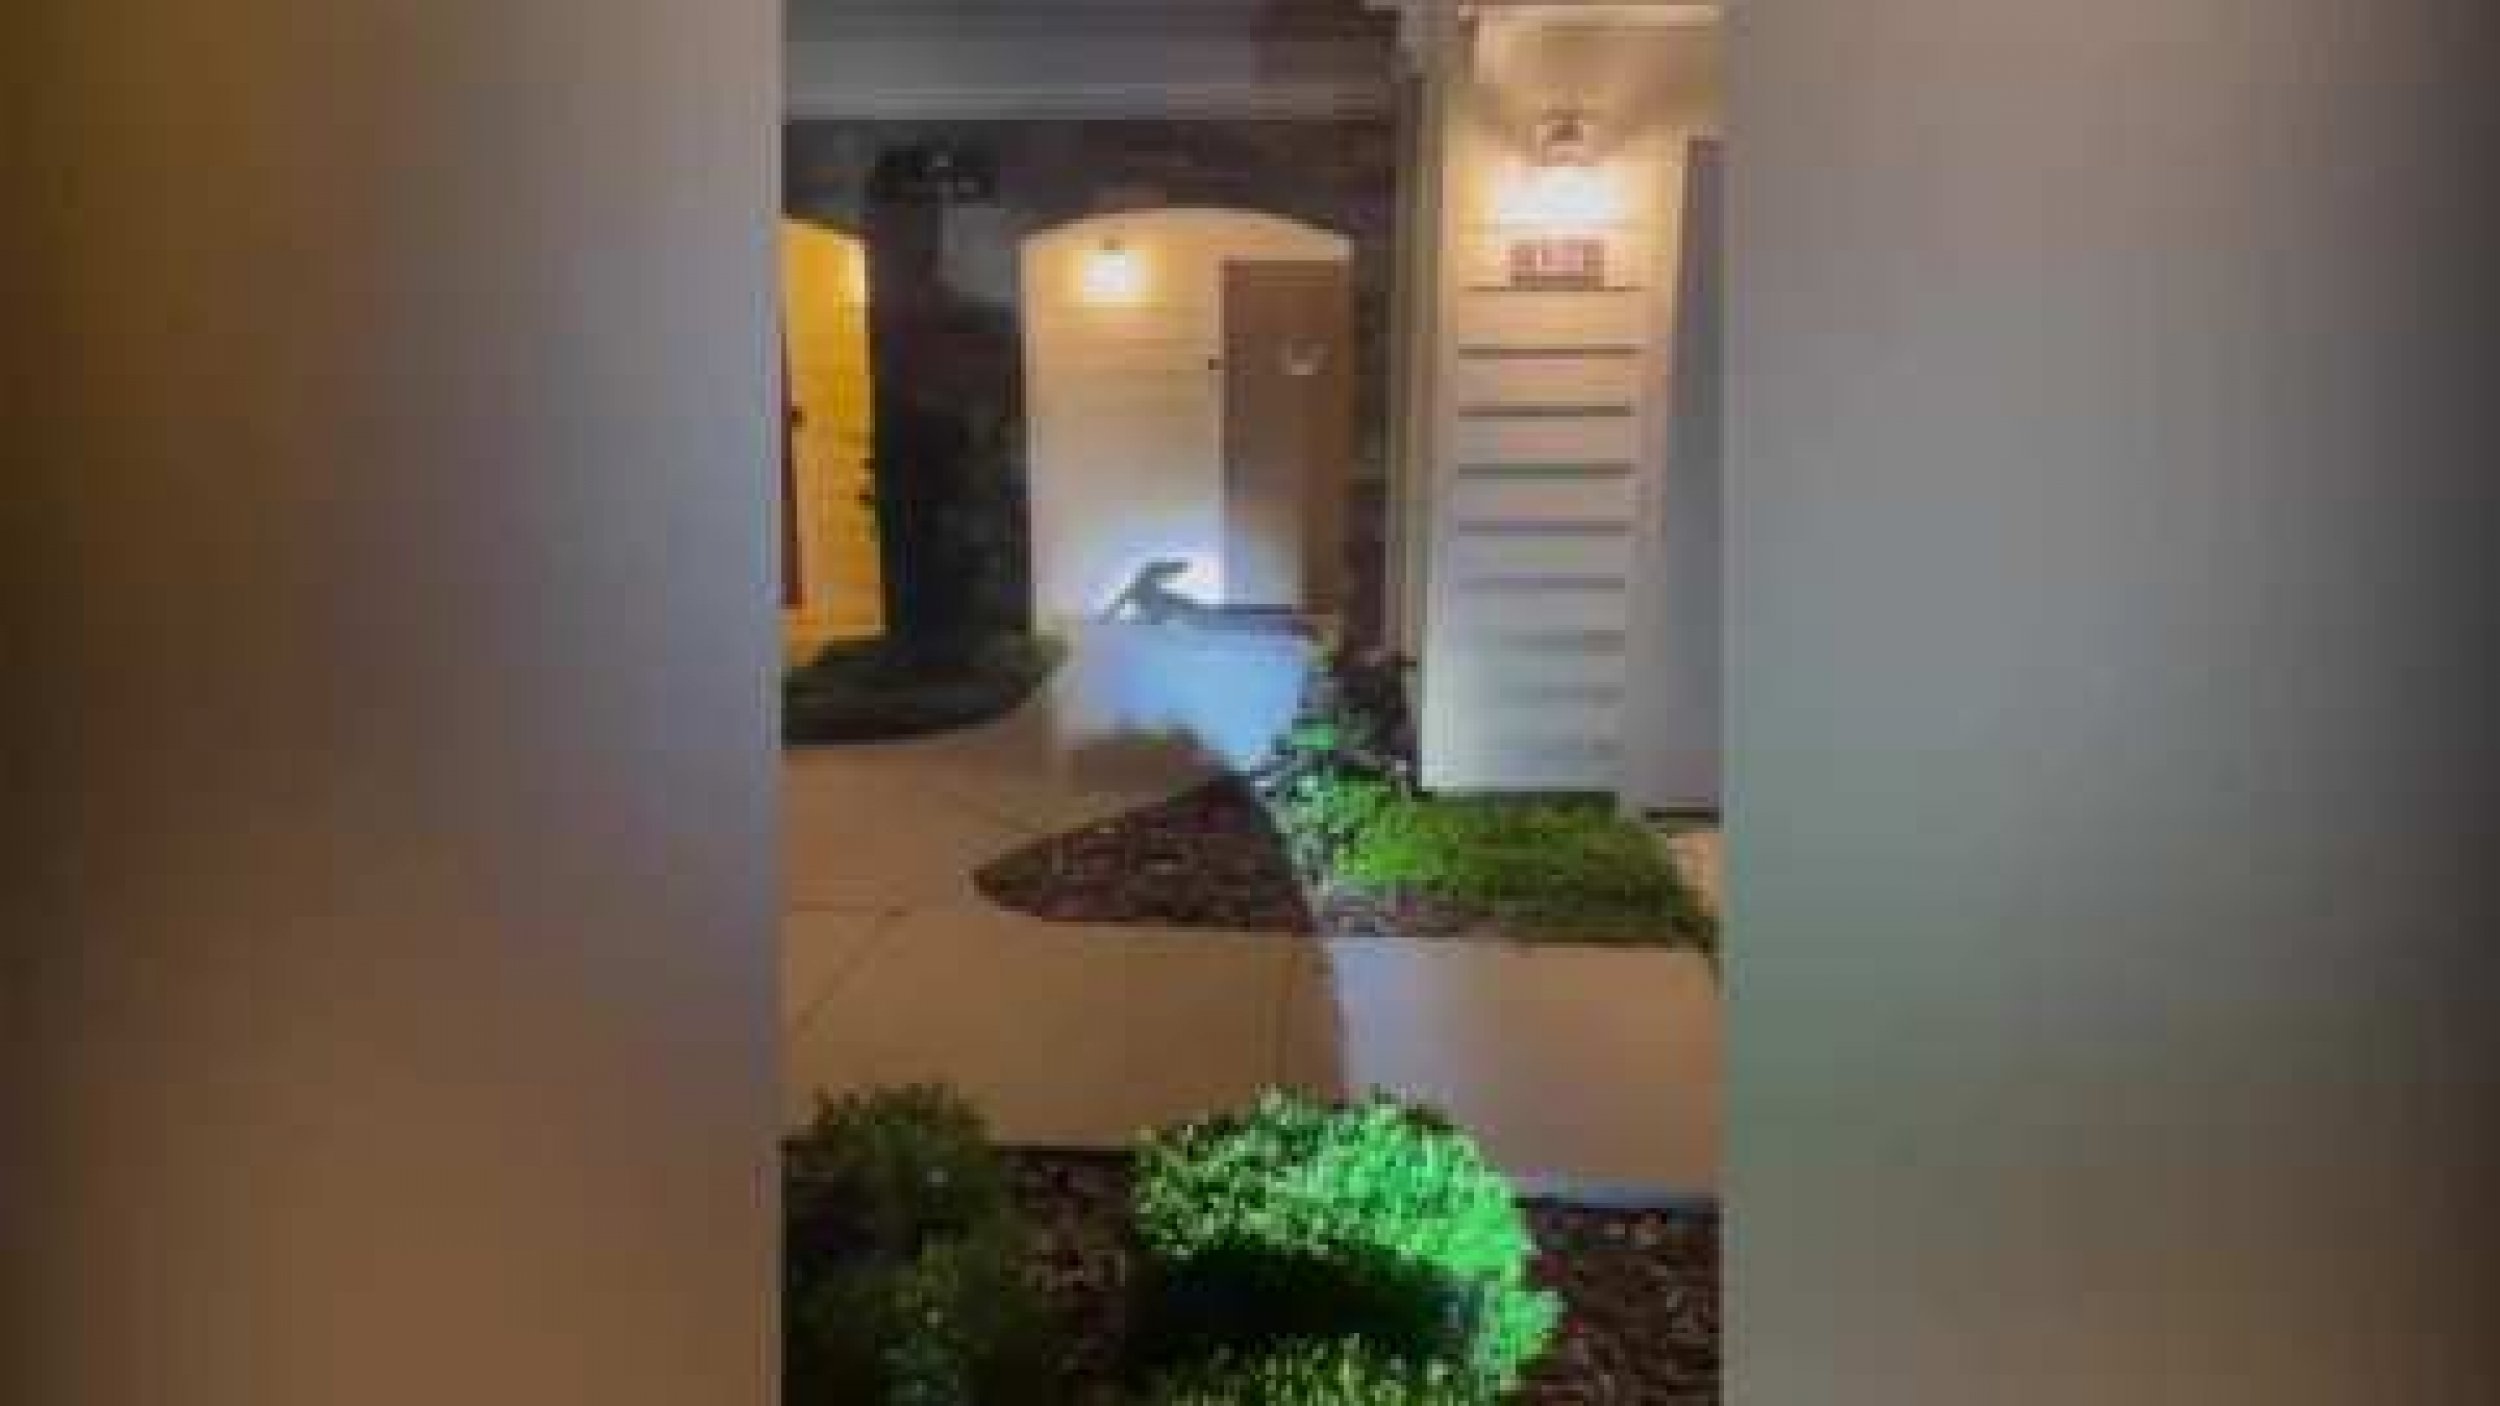 Alligator Filmed Outside Front Door Of Florida Home